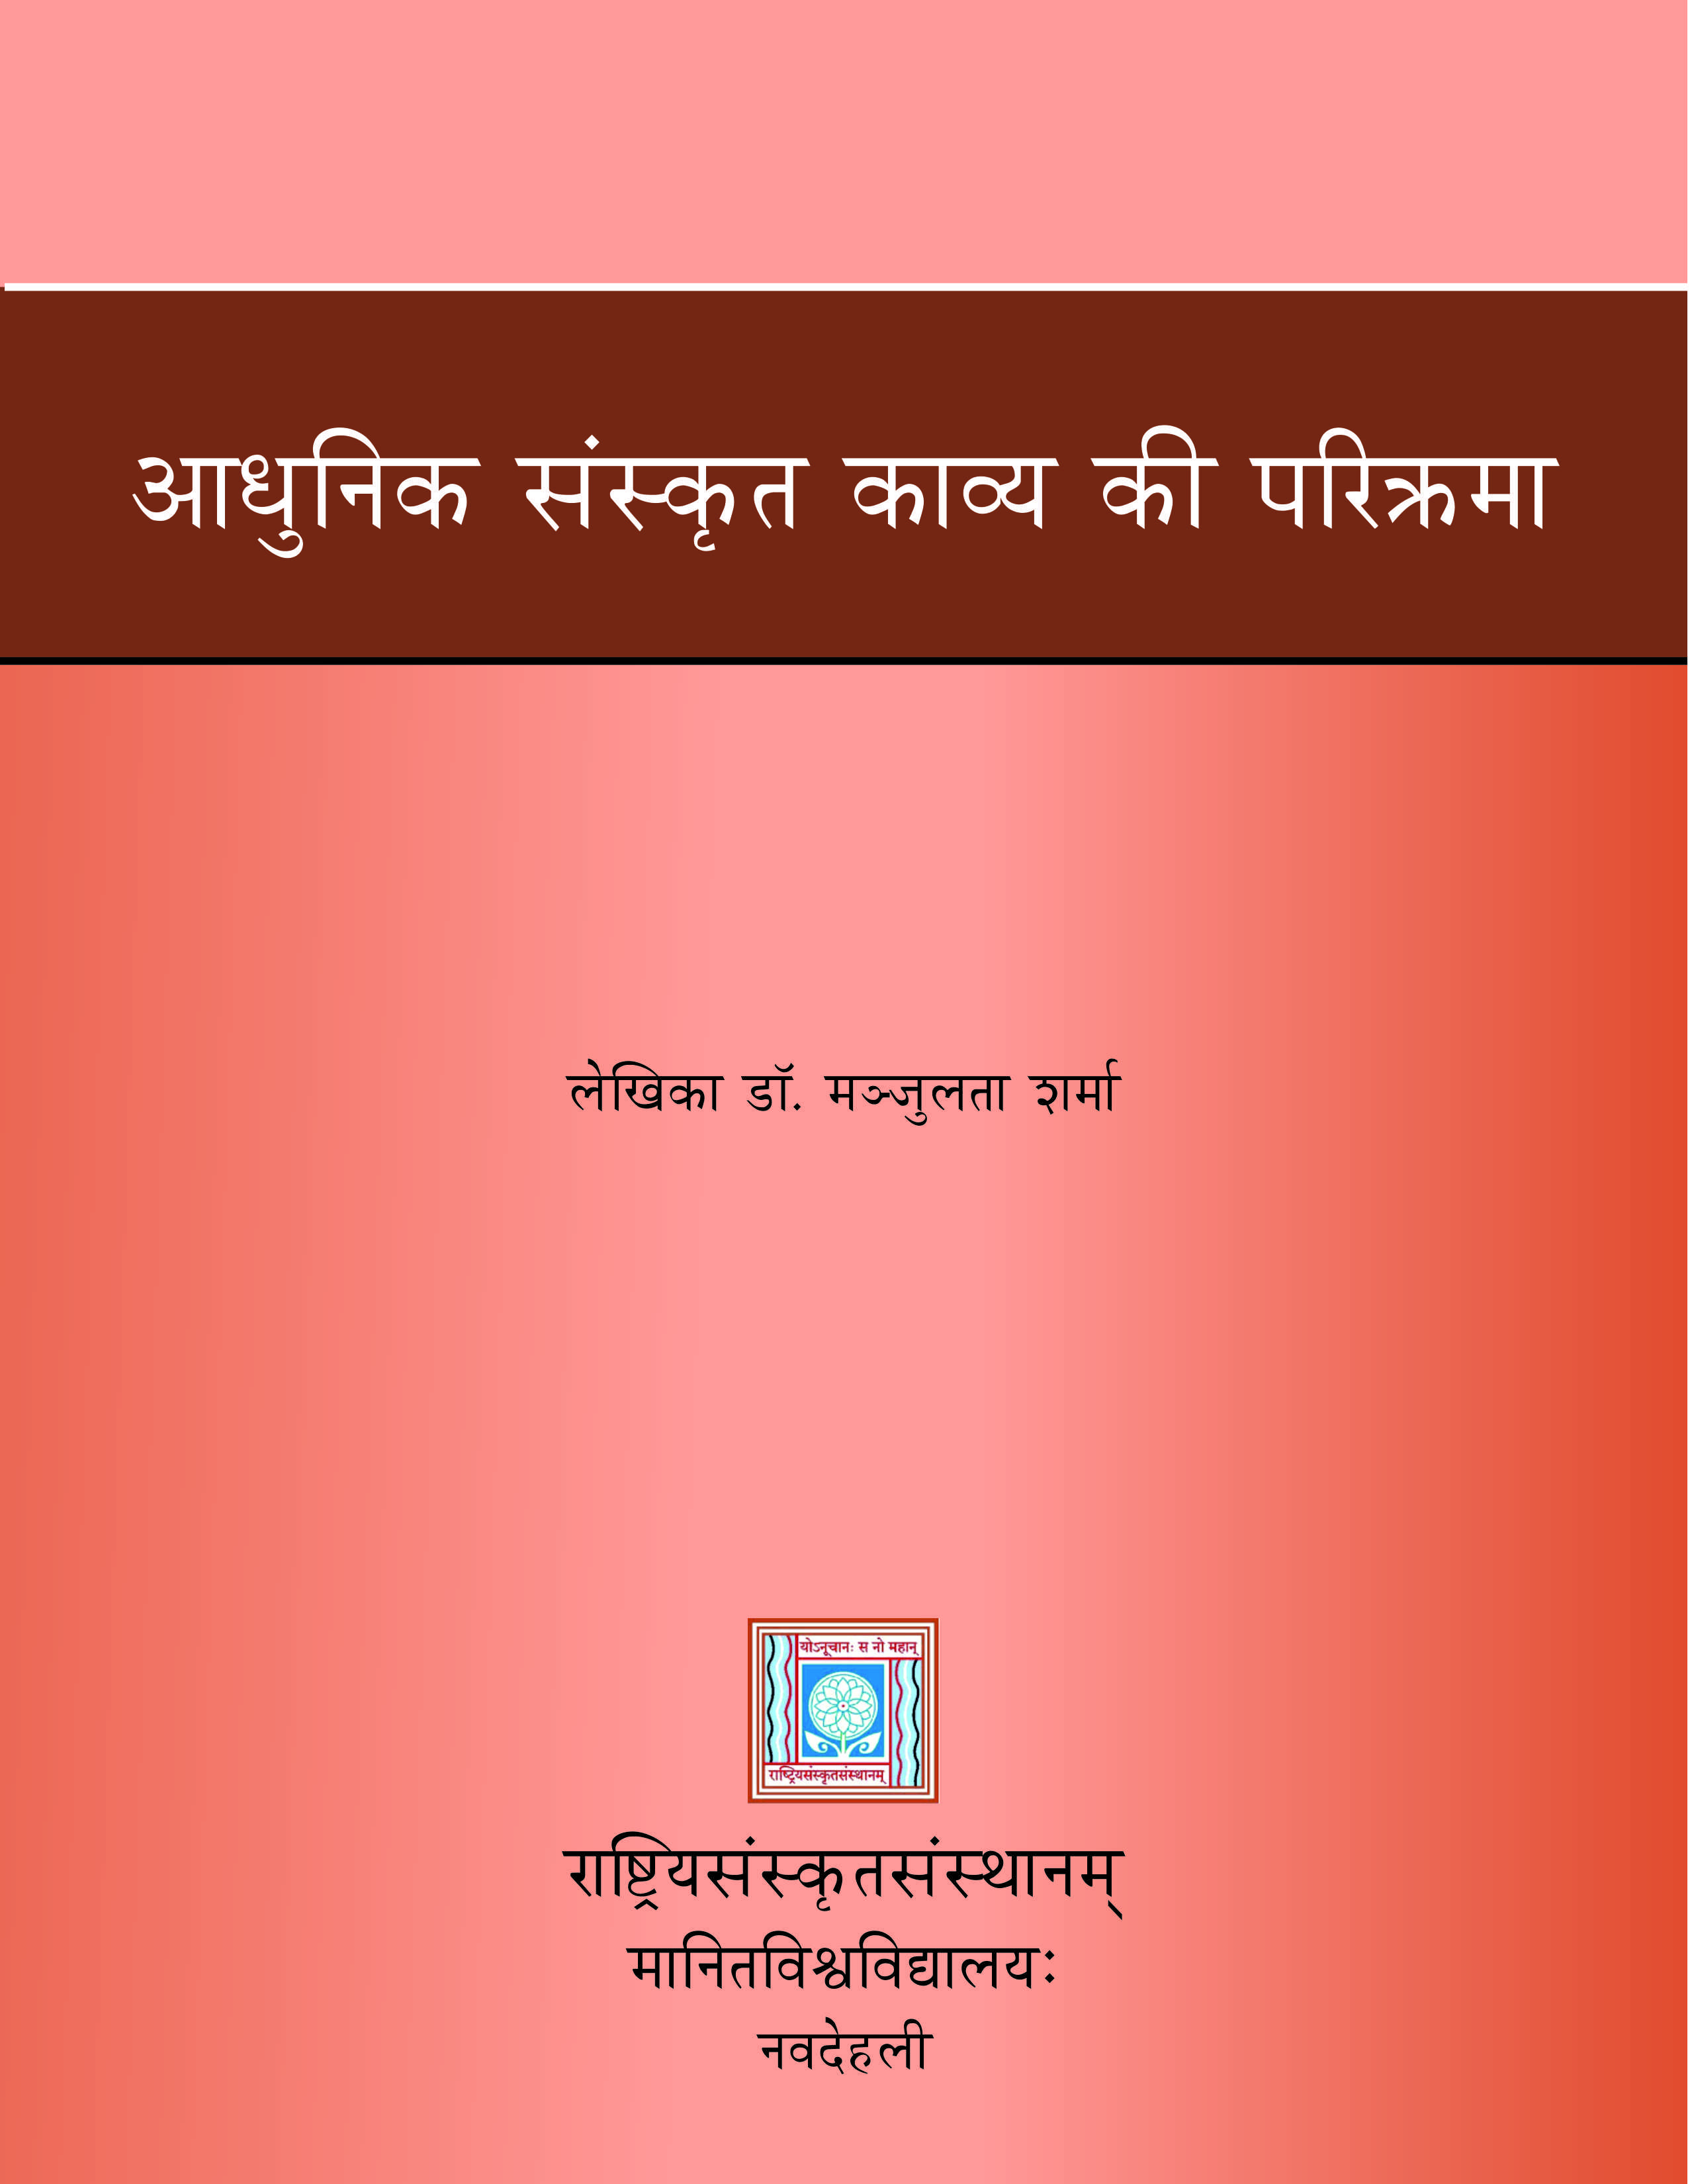 आधुनिक संस्कृत काव्य की परिक्रमा  | Aadhunik Sanskrit Kaavy ke Parikrama